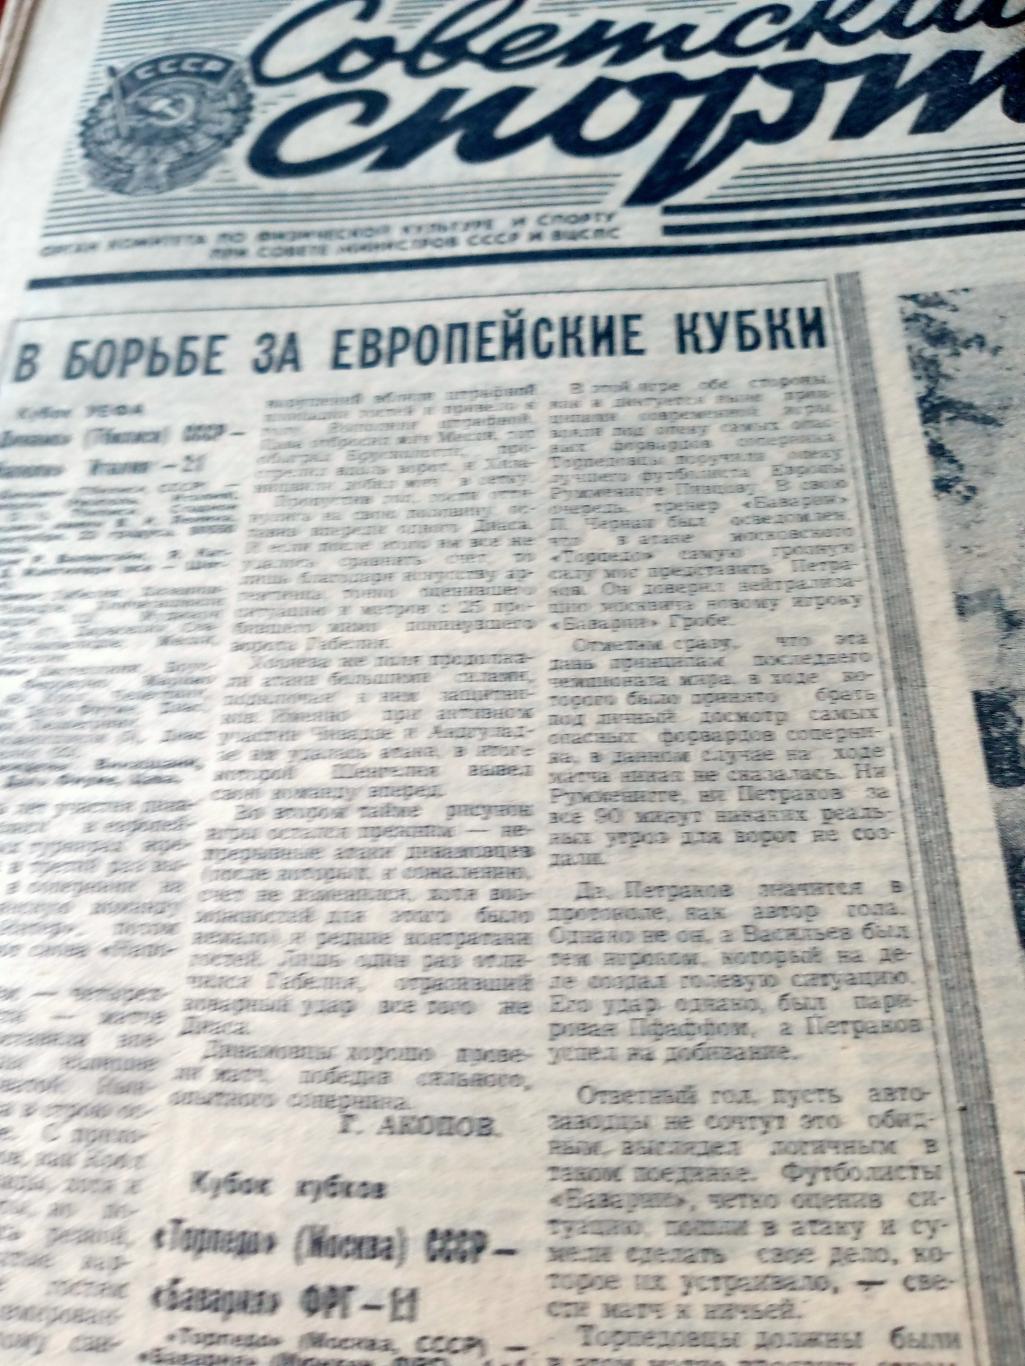 Еврокубки. Советский спорт. 1982 год. 16 сентября